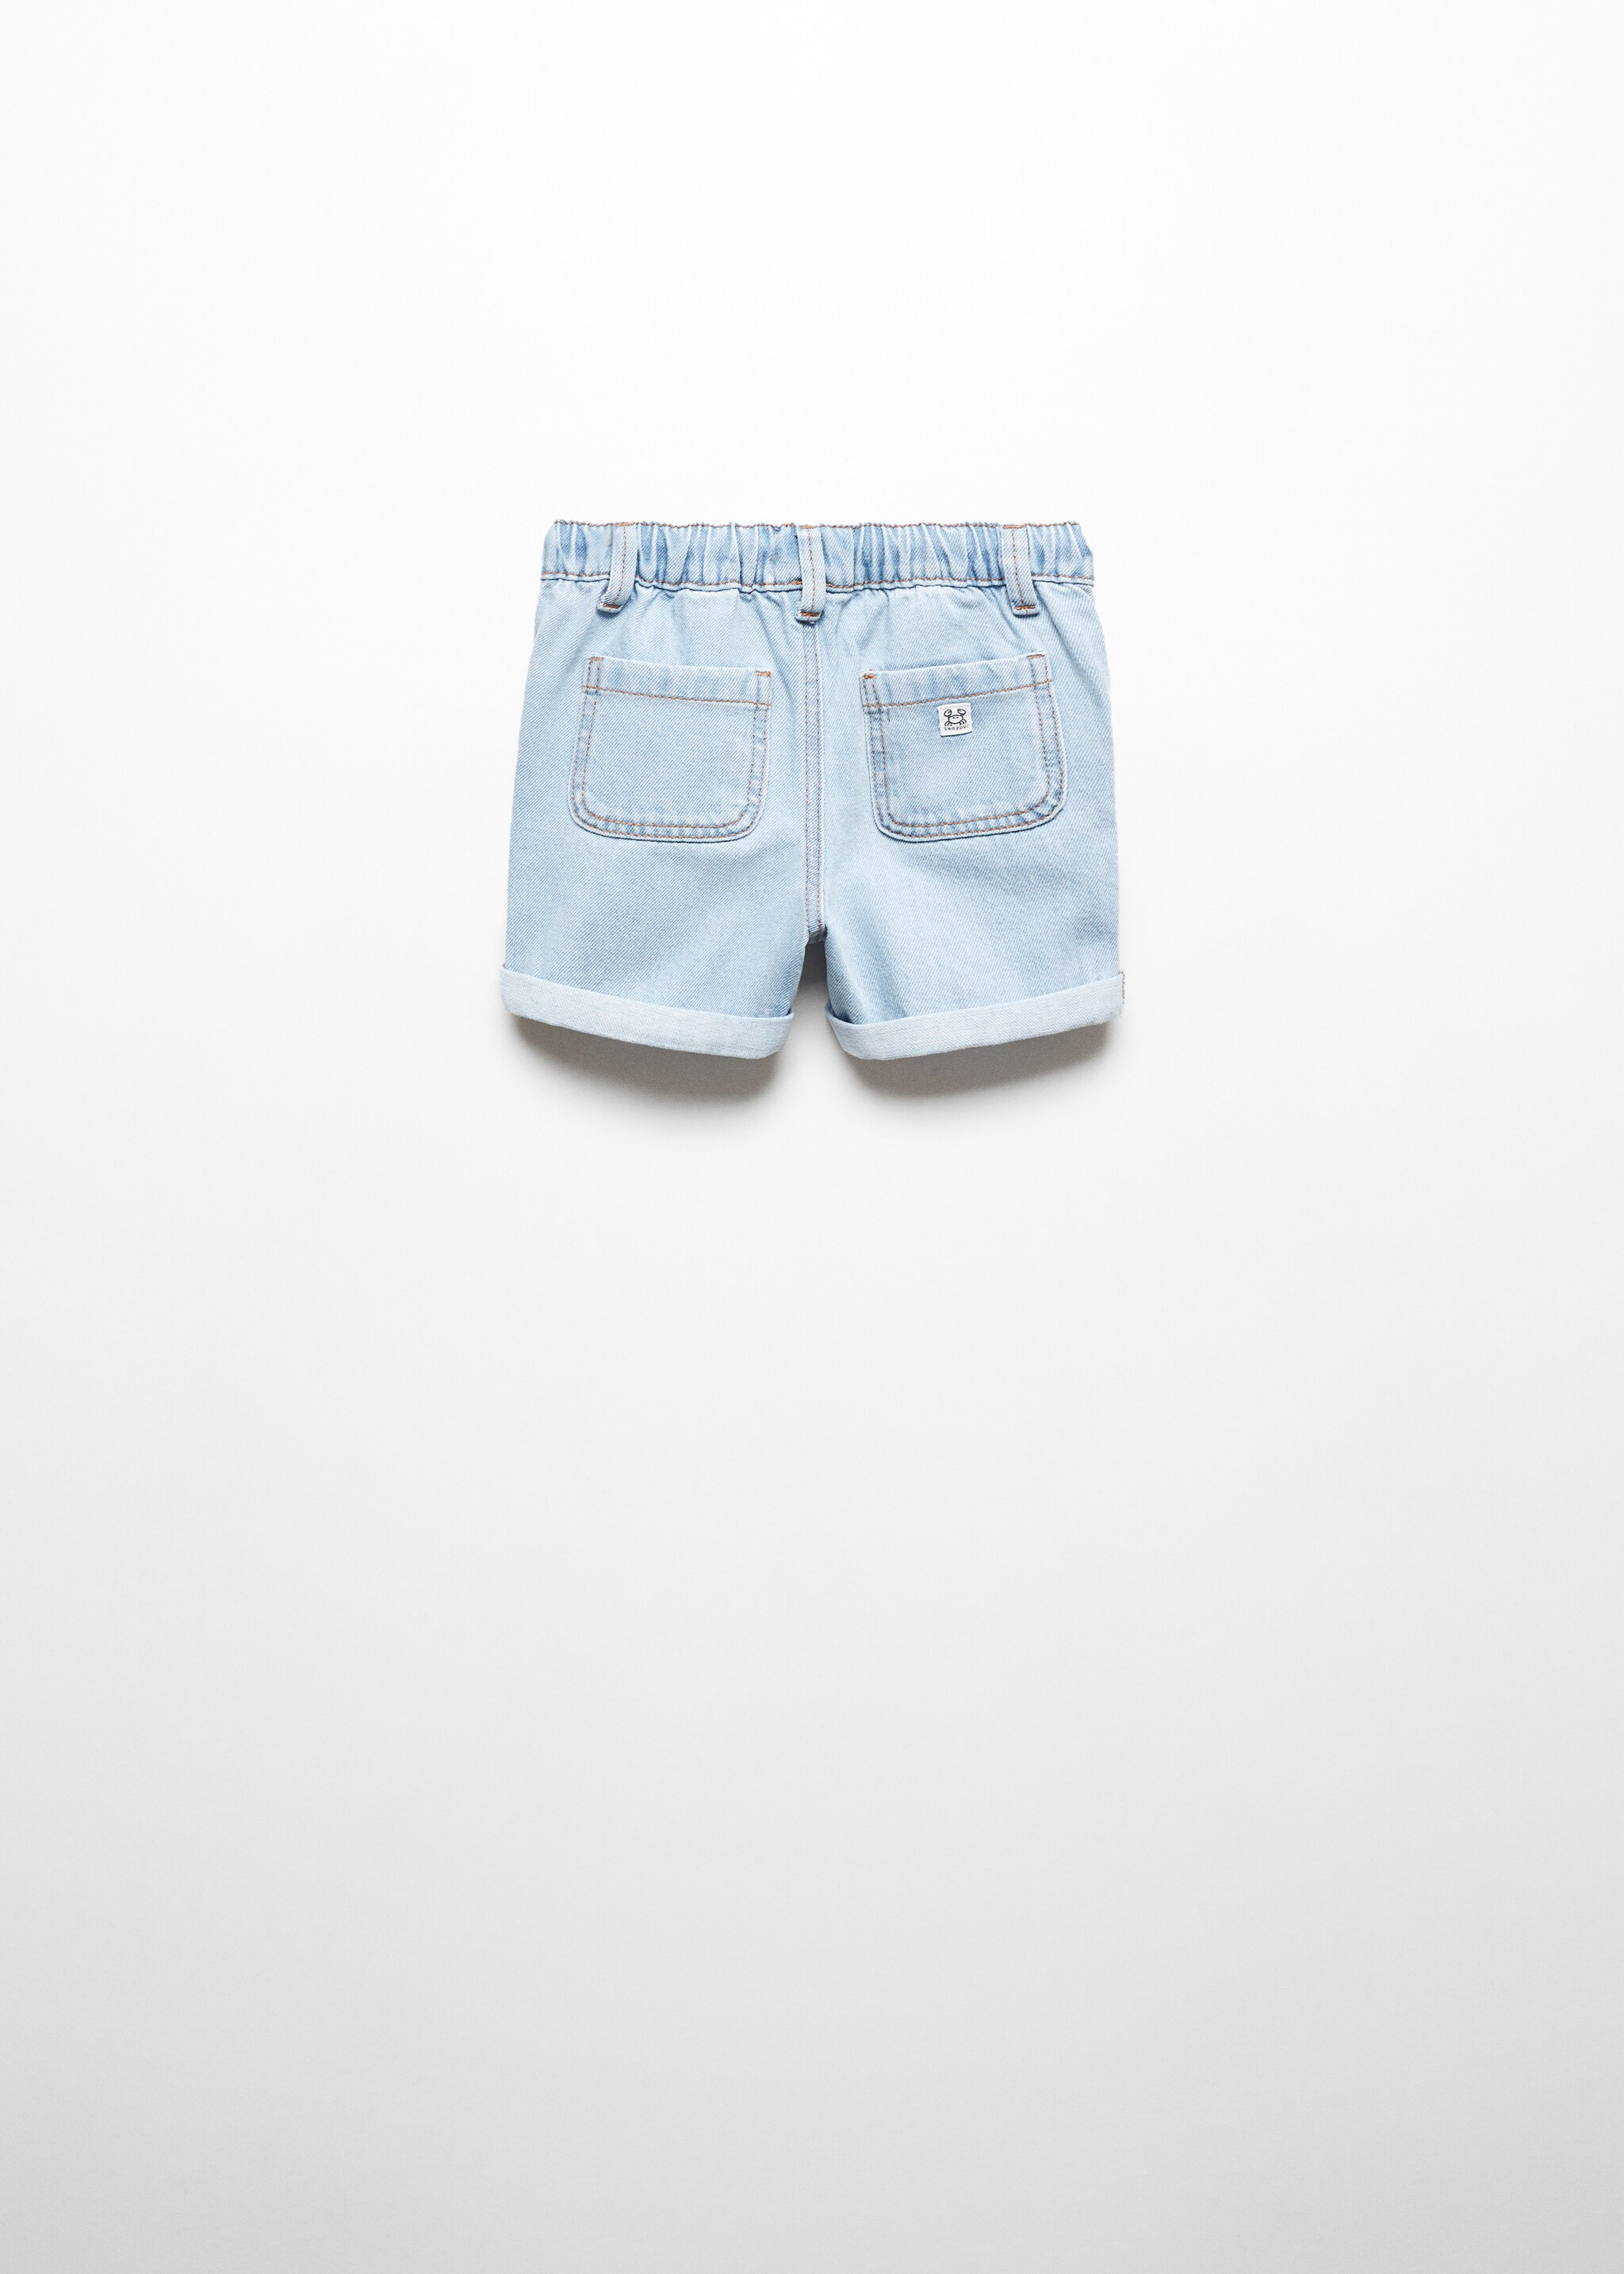 Jeans-Bermudas mit elastischem Bund - Rückseite des Artikels